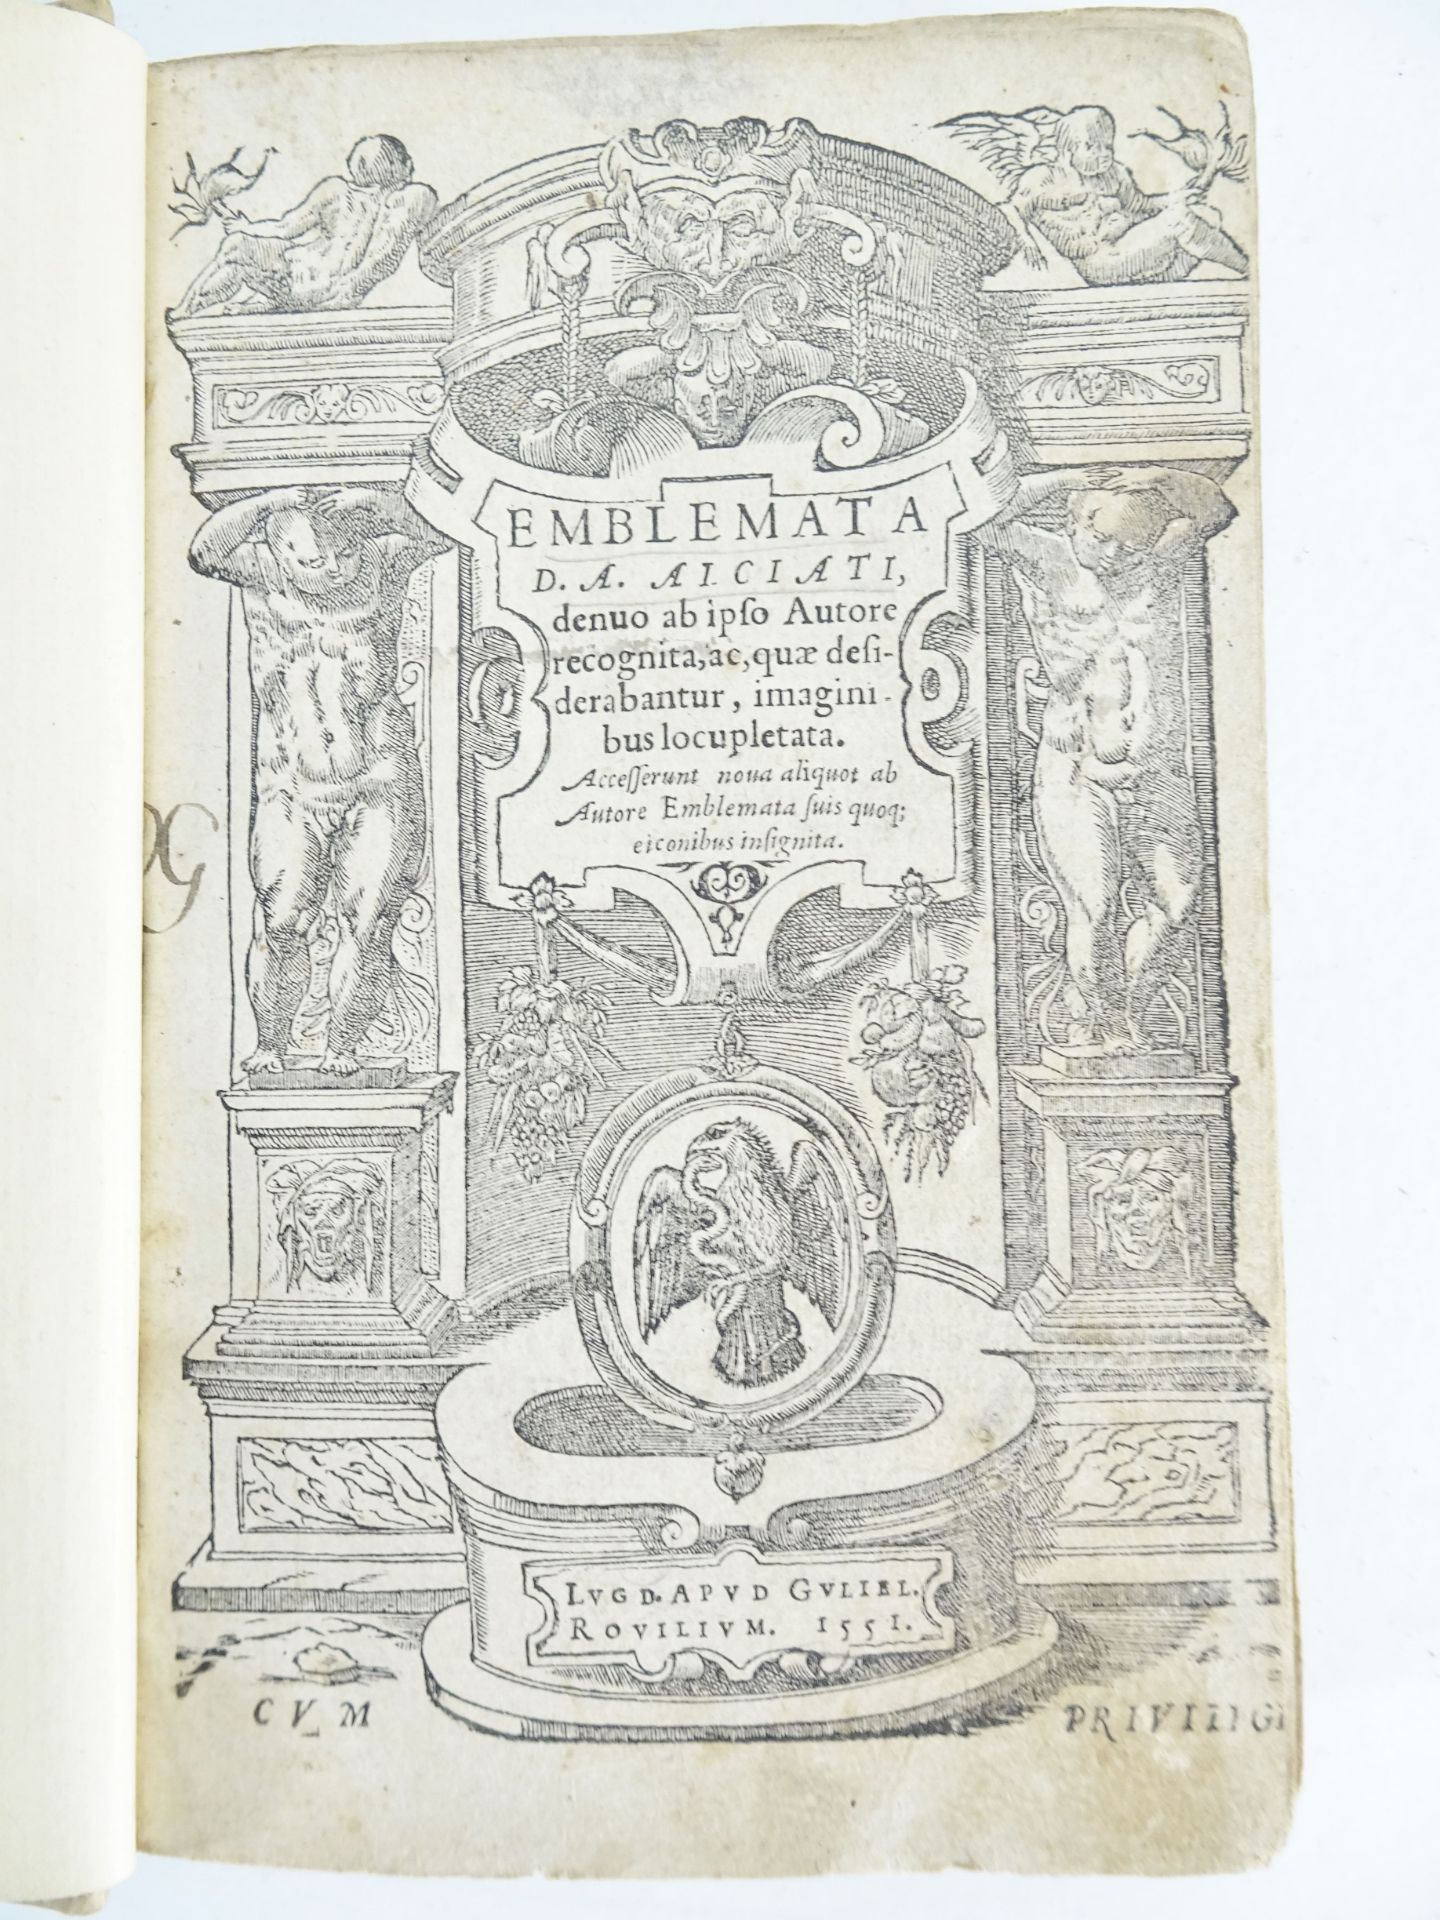 |Emblemata| Alciati Andrea, "Emblemata D.A. Alciati, denuo ab ipso Autore…", 1551